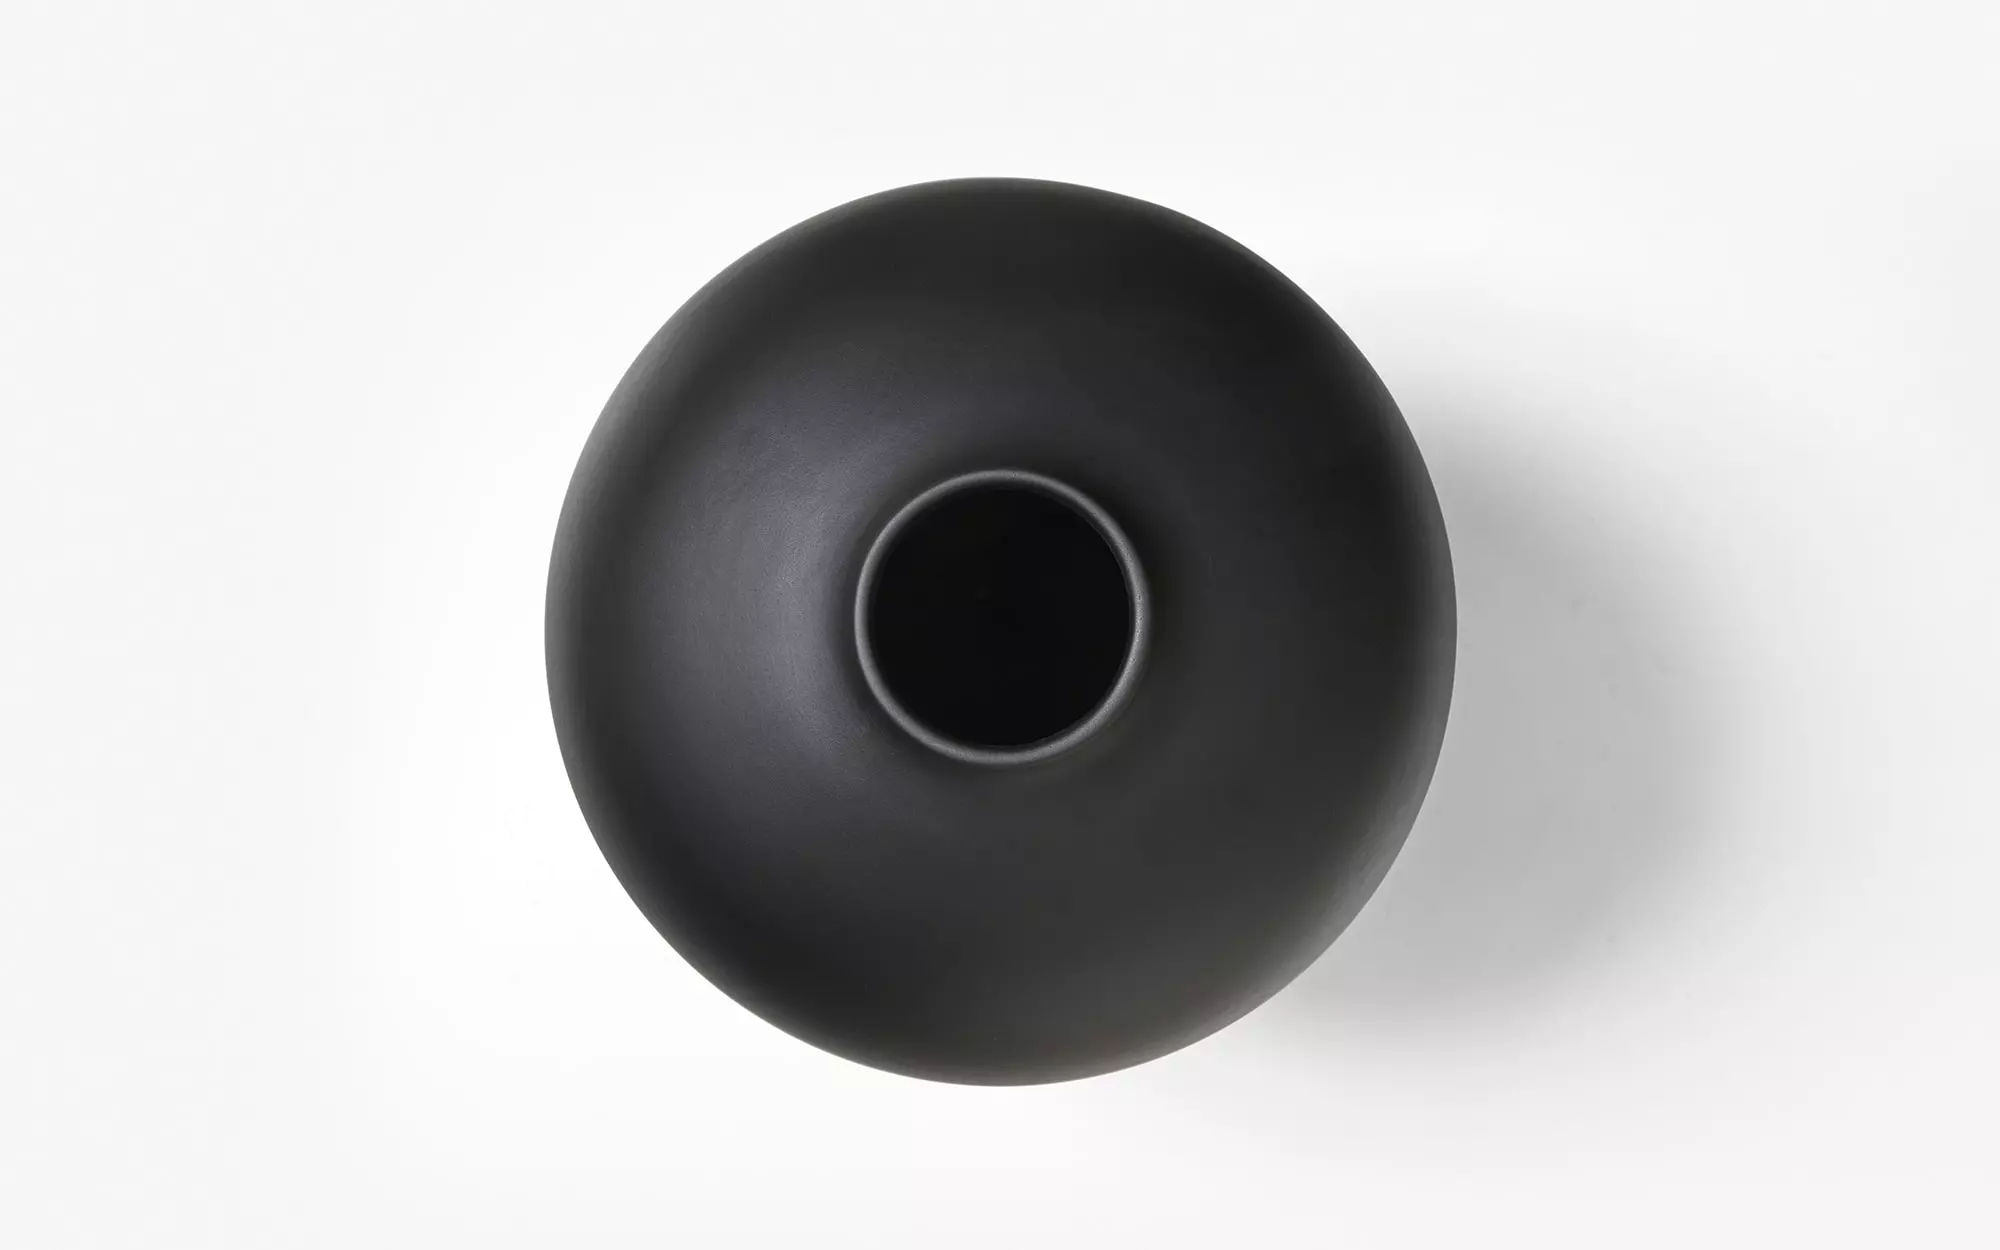 Plump - 2 Vase - Pierre Charpin - Vase - Galerie kreo